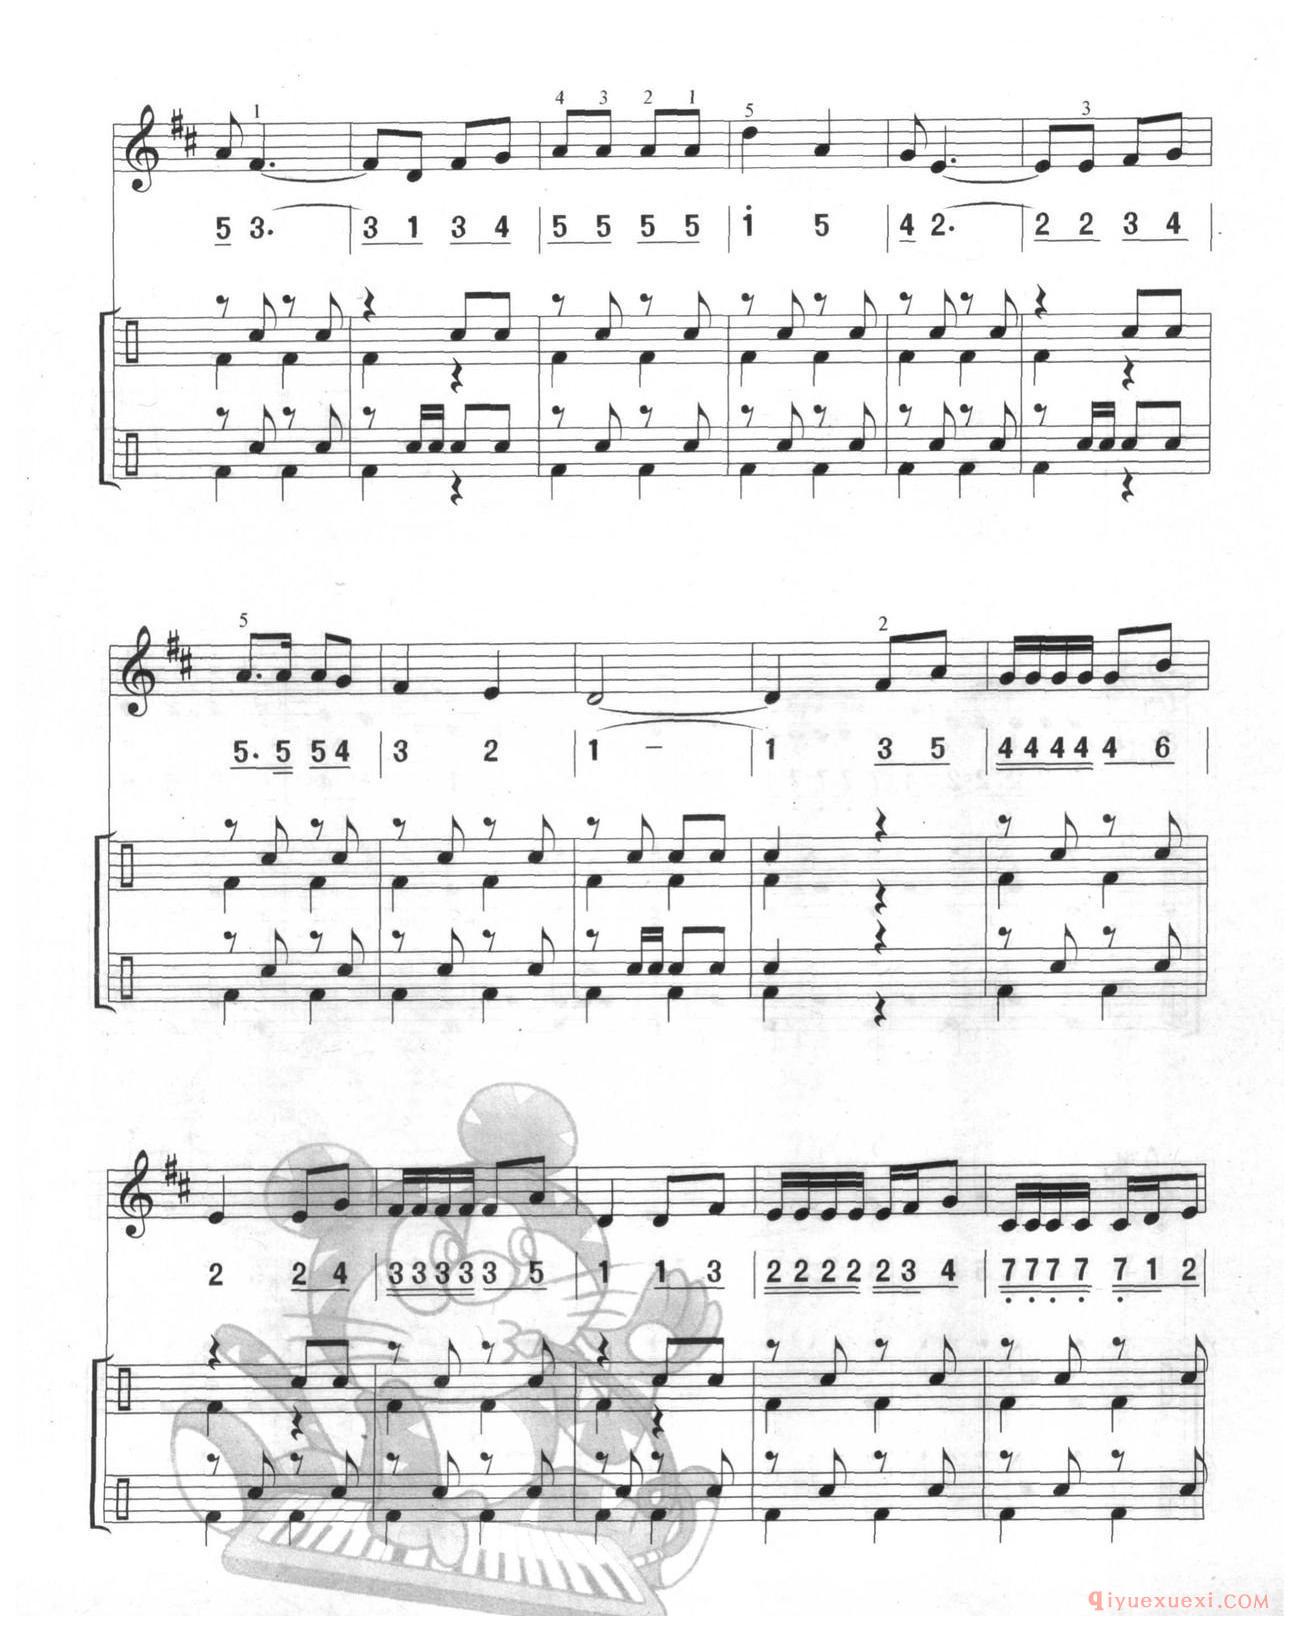 口风琴多声部乐曲《啄木鸟(总谱)》加入打击乐的练习